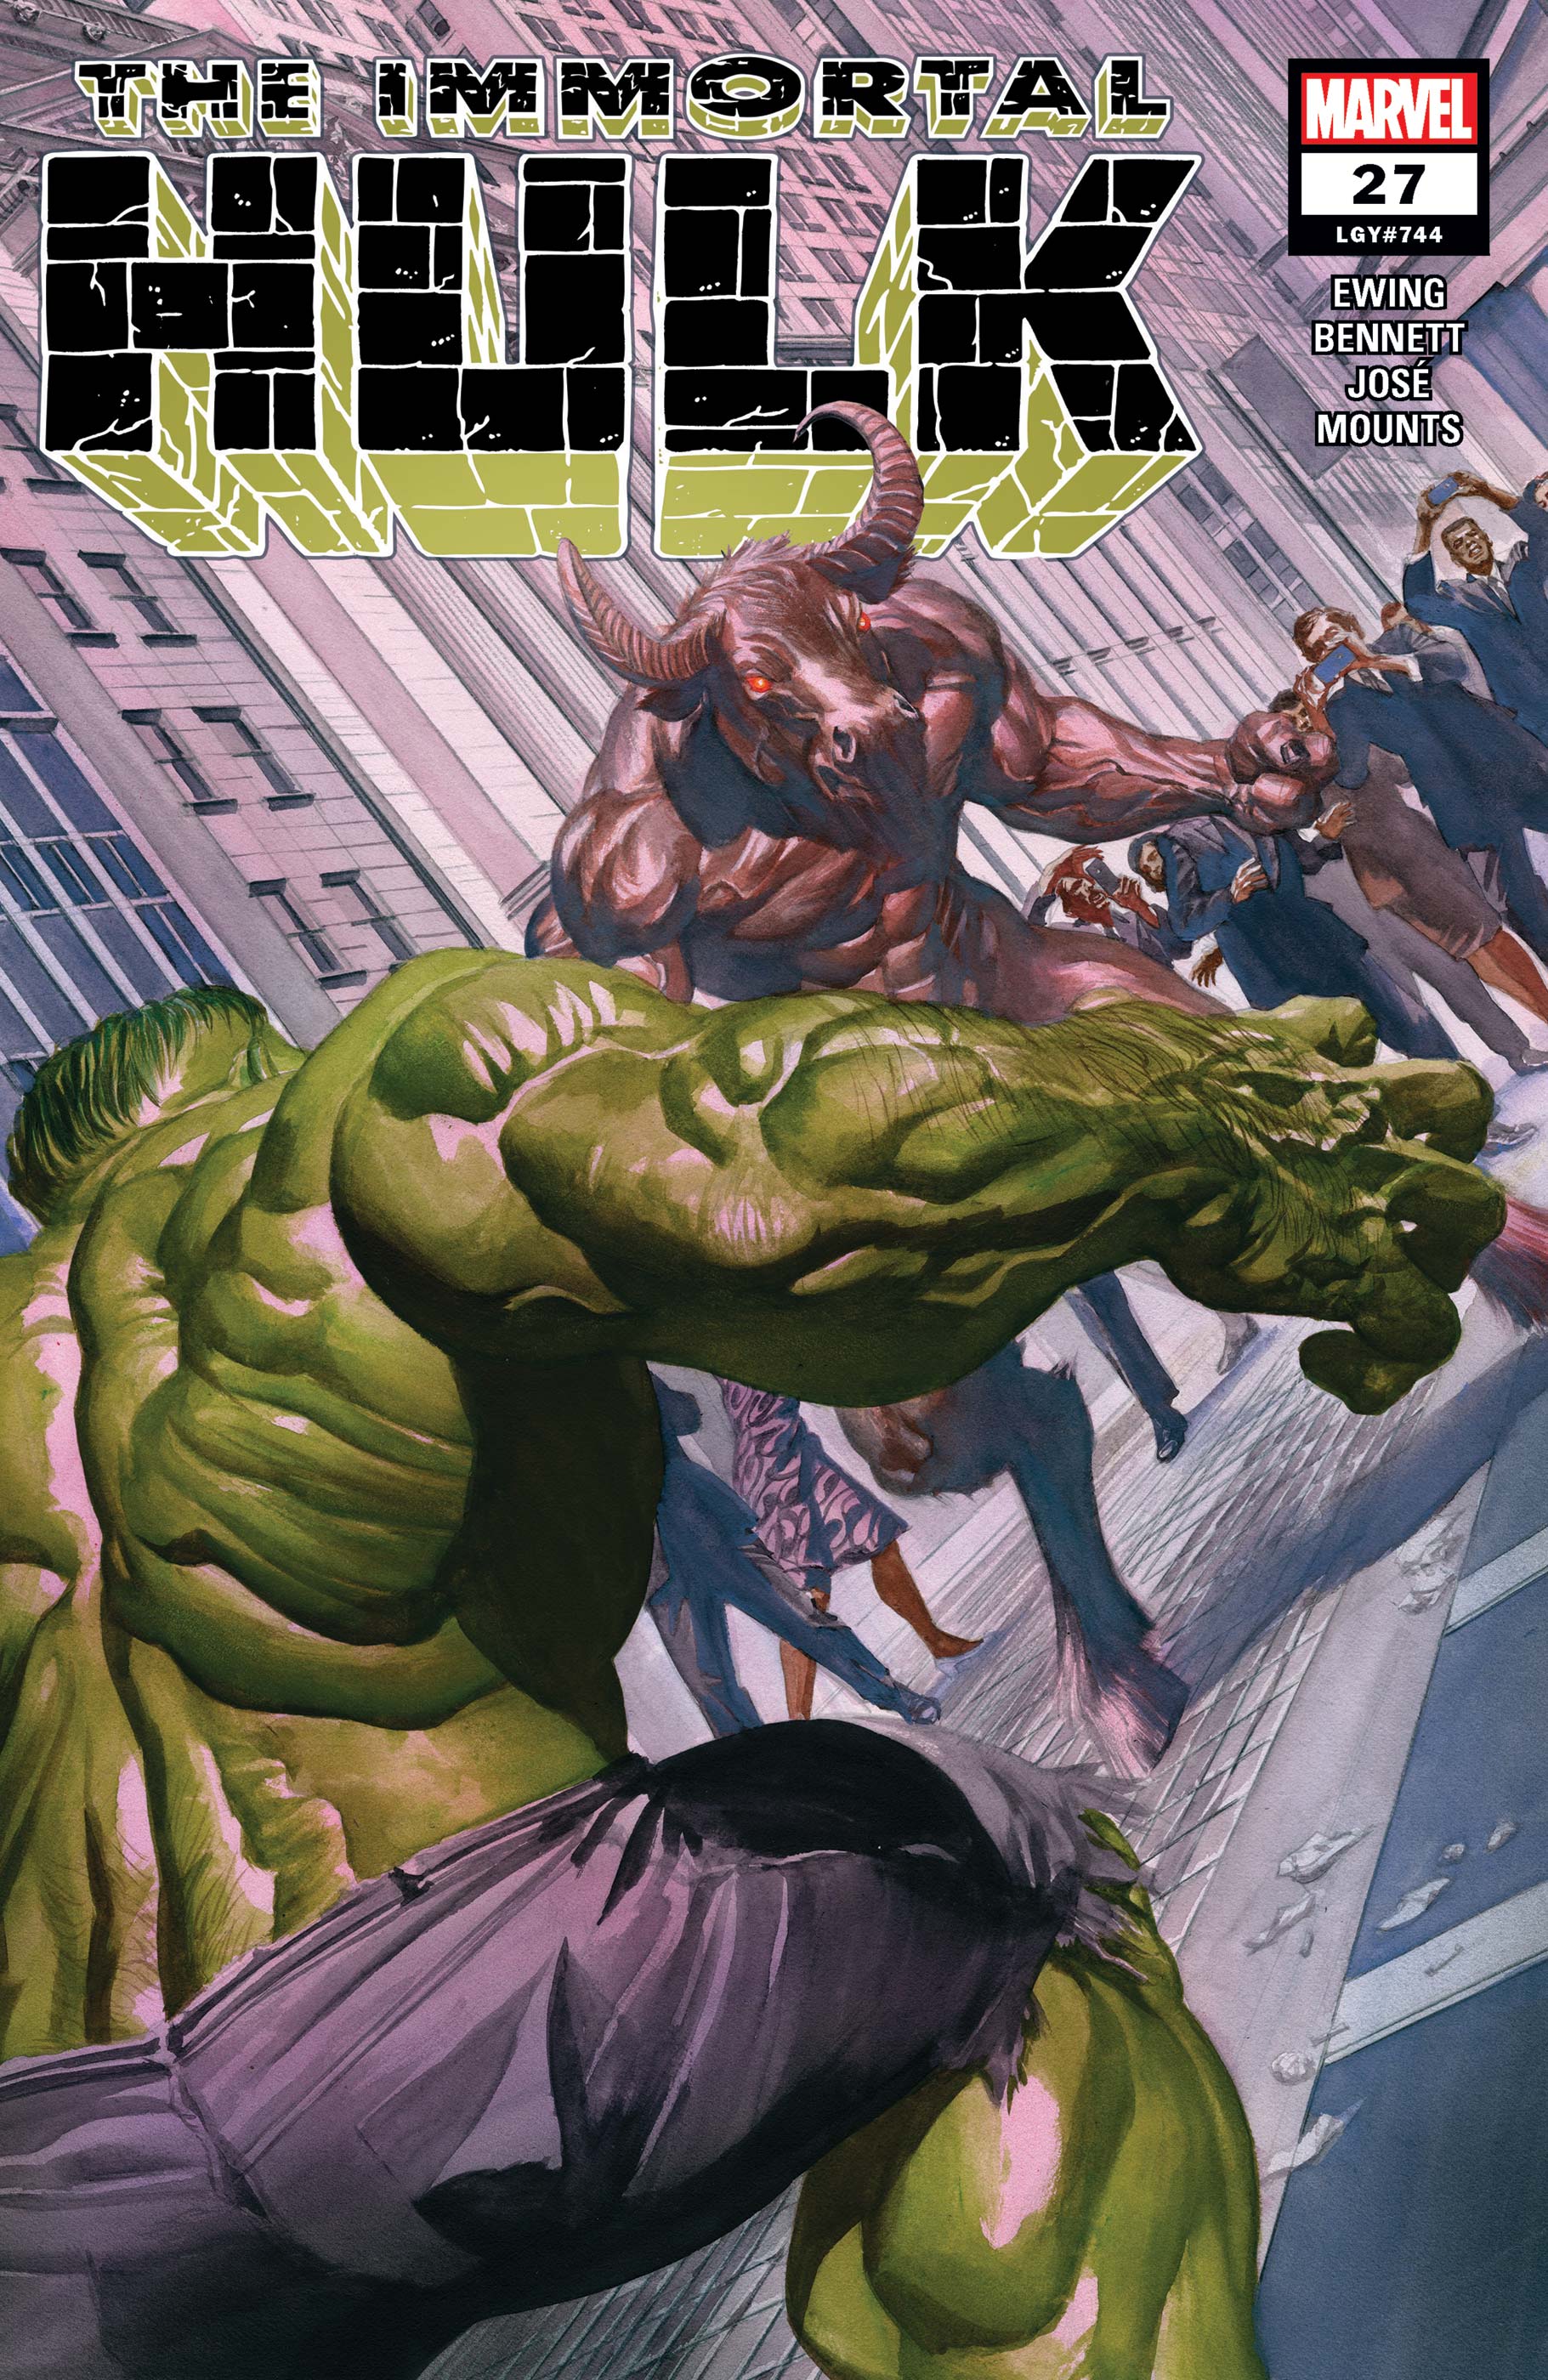 Immortal Hulk (2018) #27